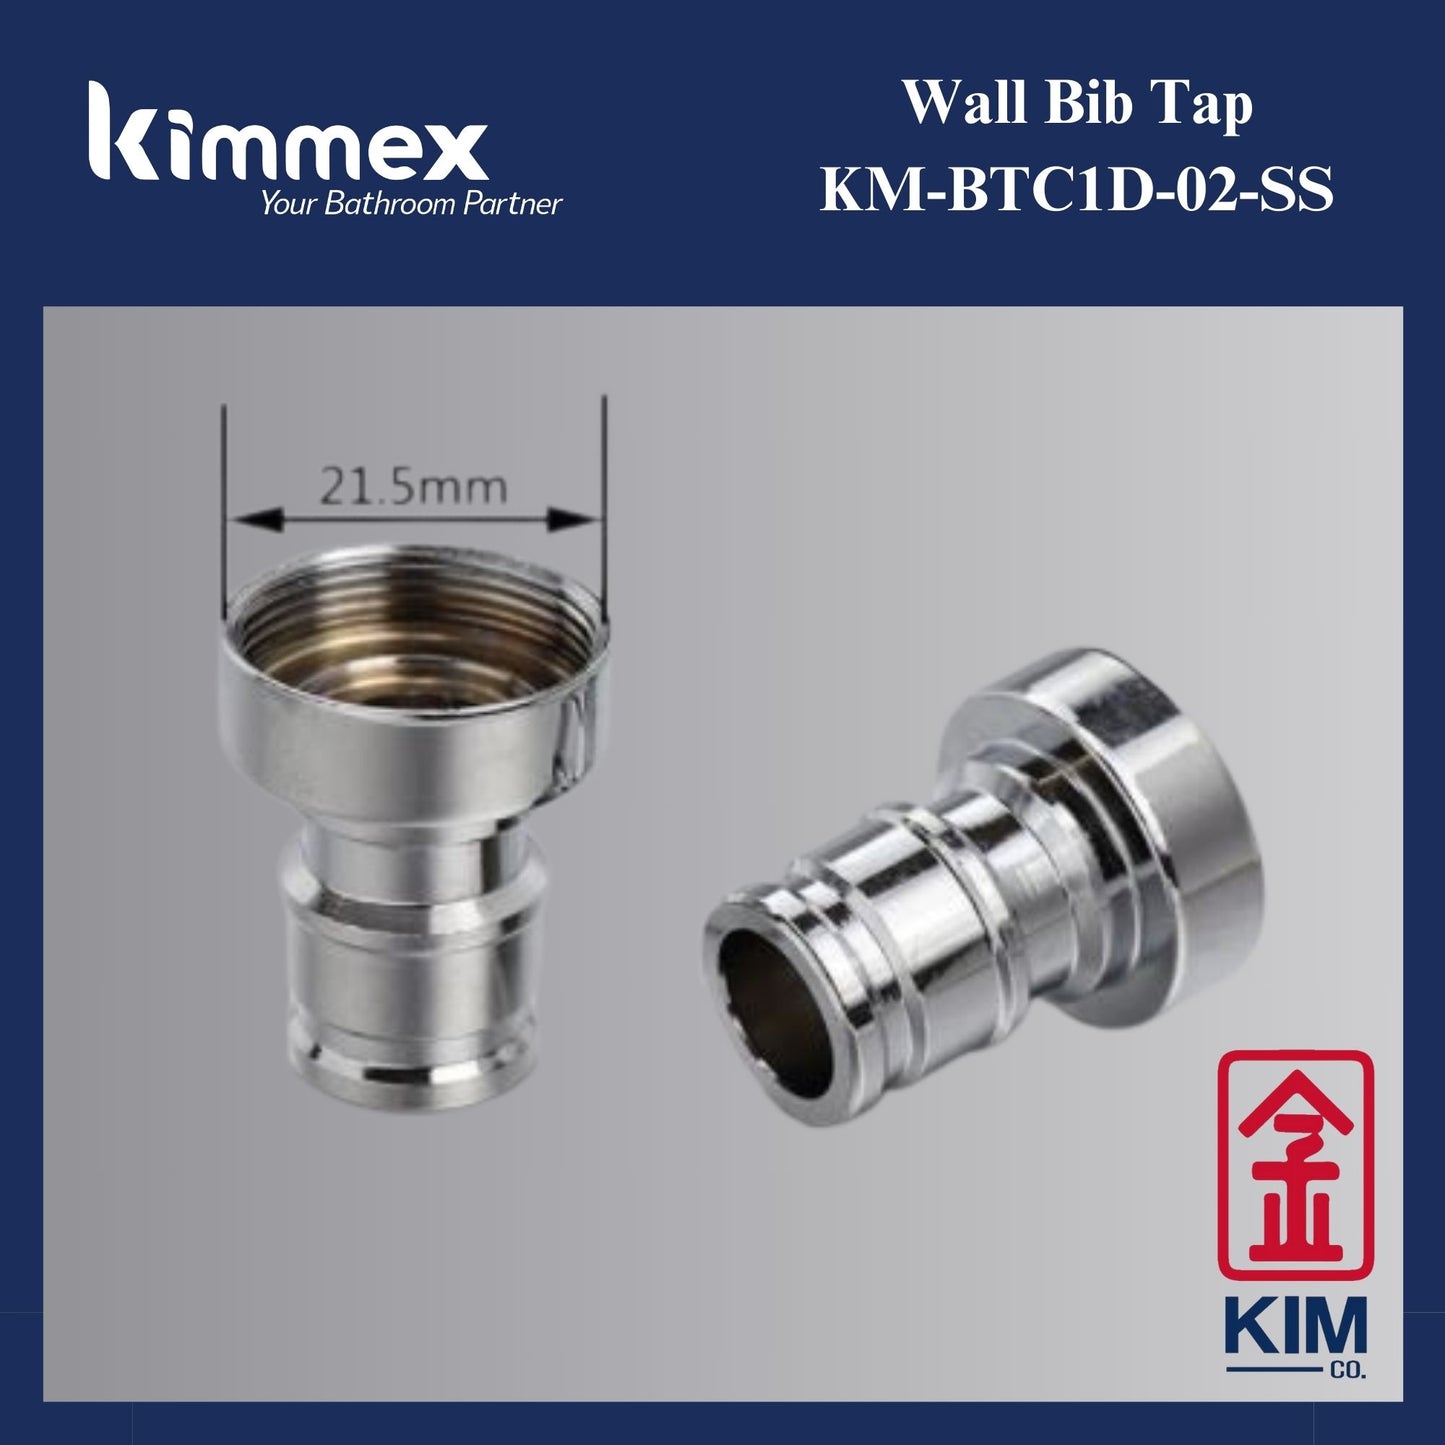 kimmex Stainless Steel 304 Wall Bib Tap (With 2 Aerators) (KM-BTC1D-02-SS)